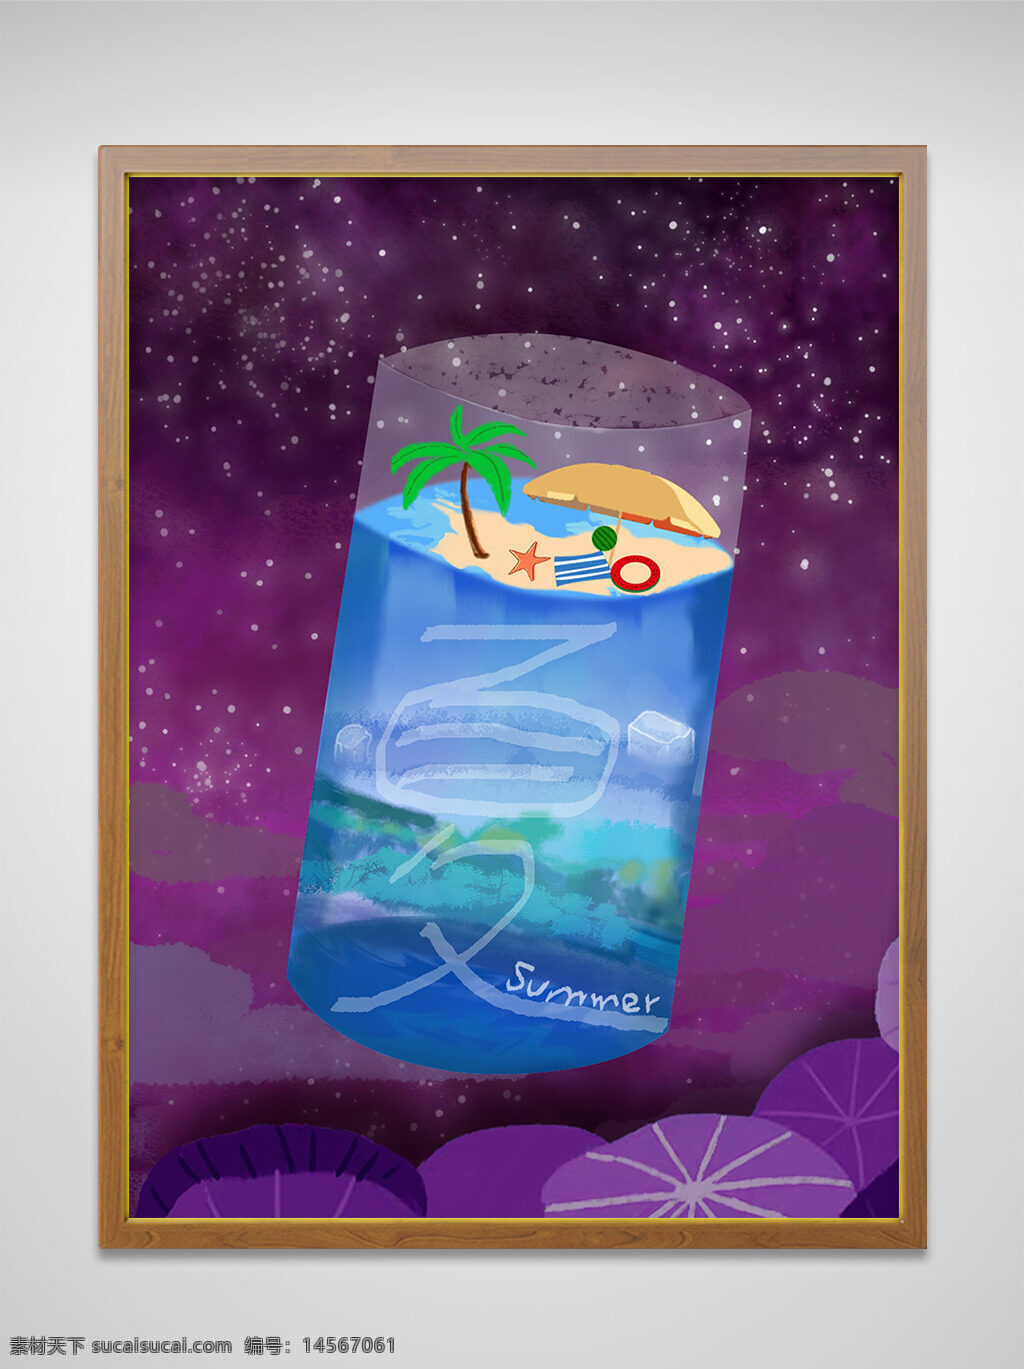 夏 海边 海滩 椰树 伞 西瓜泳圈 插画 海报 简约 荷 星空 夏日 大海 杯子